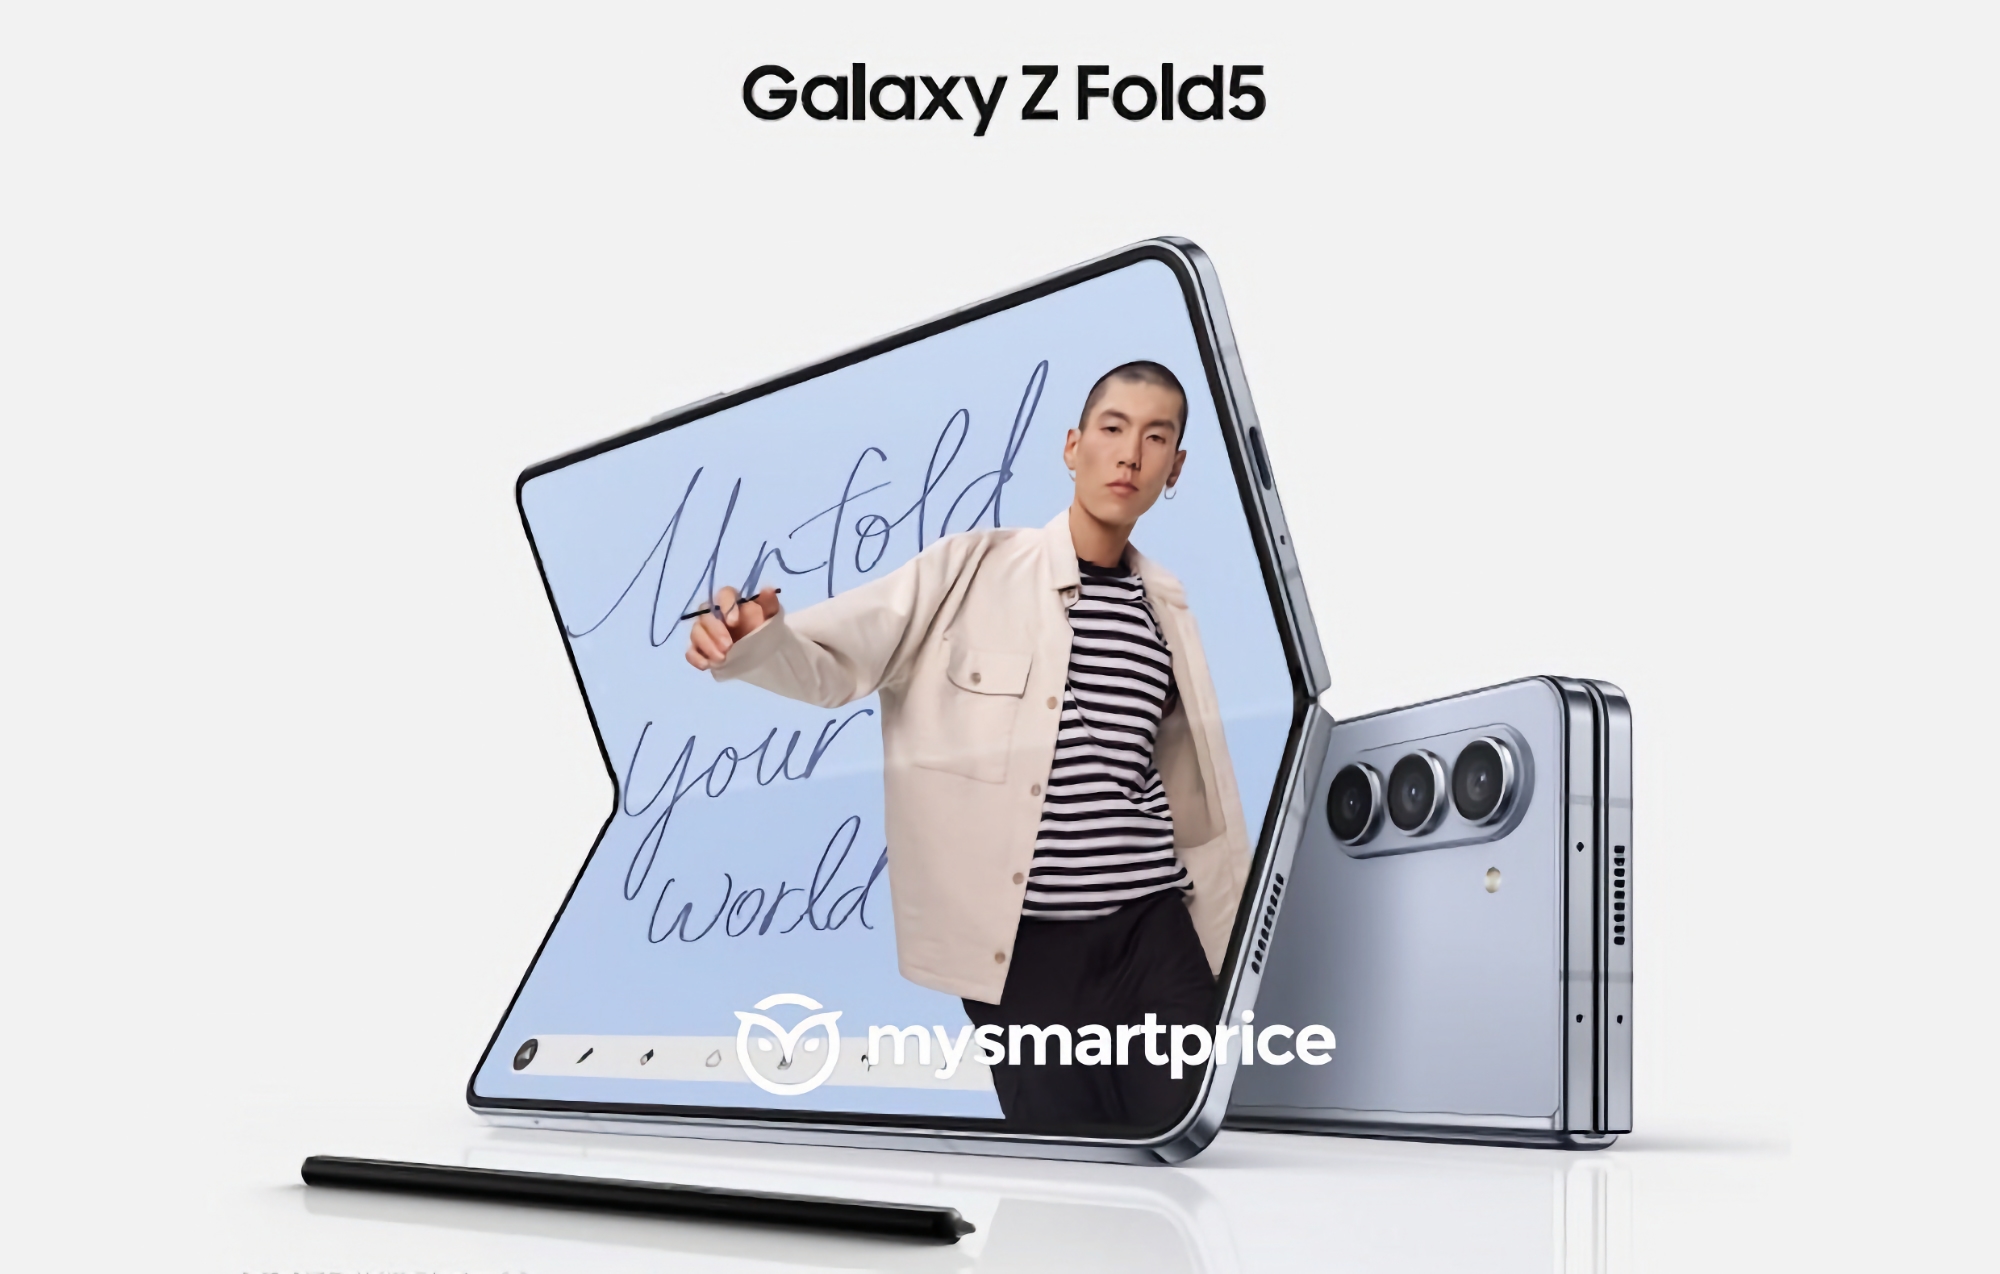 Cambiamenti minimi: è emersa online la prima immagine ufficiale dello smartphone Samsung Galaxy Fold 5